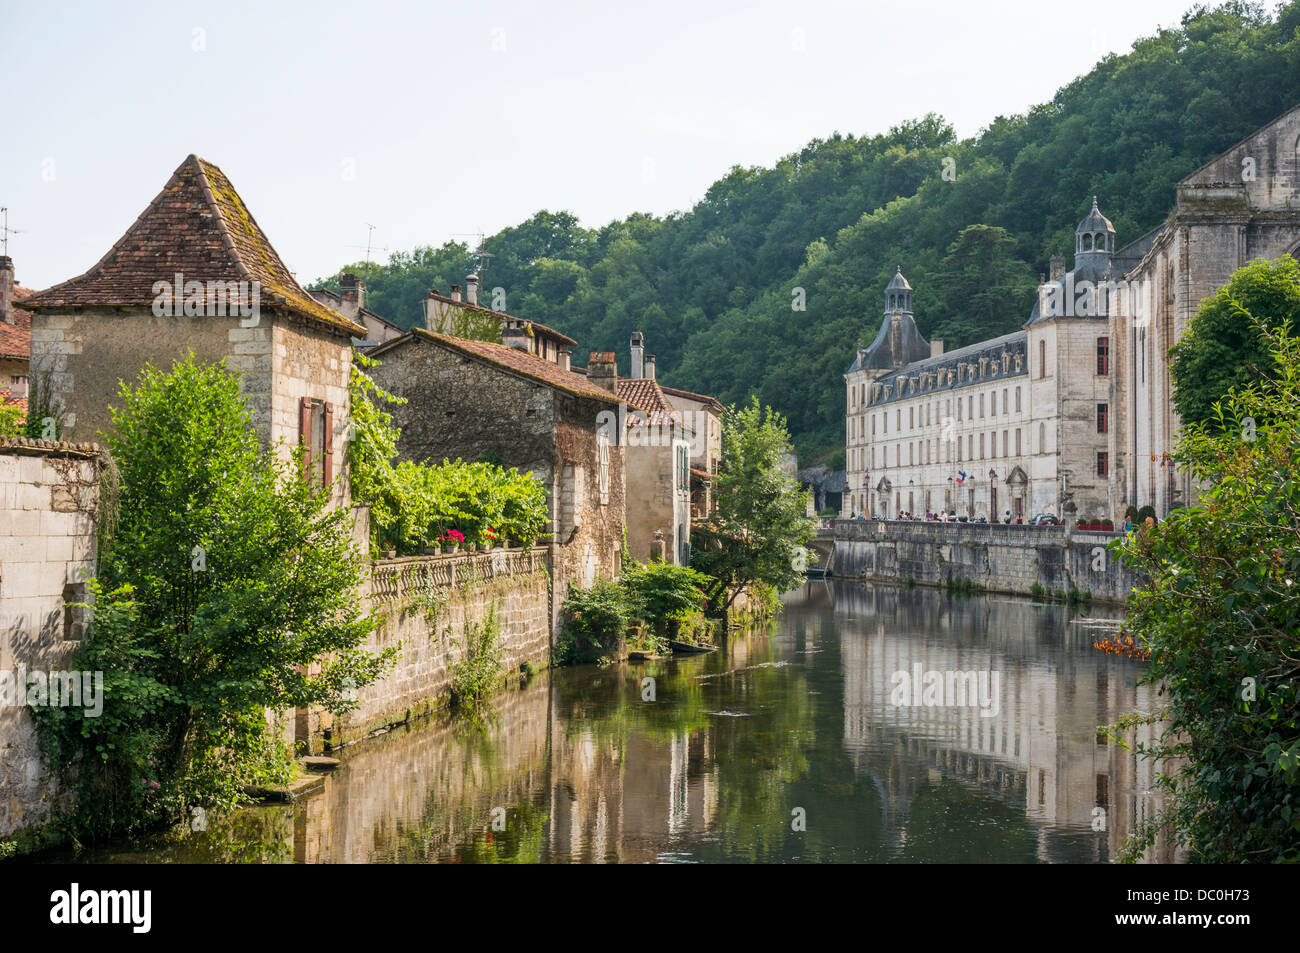 Le proprietà che si affaccia sul fiume Dronne, con l'abbazia sull'altro lato, in Brantôme, nel dipartimento di Dordogna nel sud-ovest della Francia, l'Europa. Foto Stock